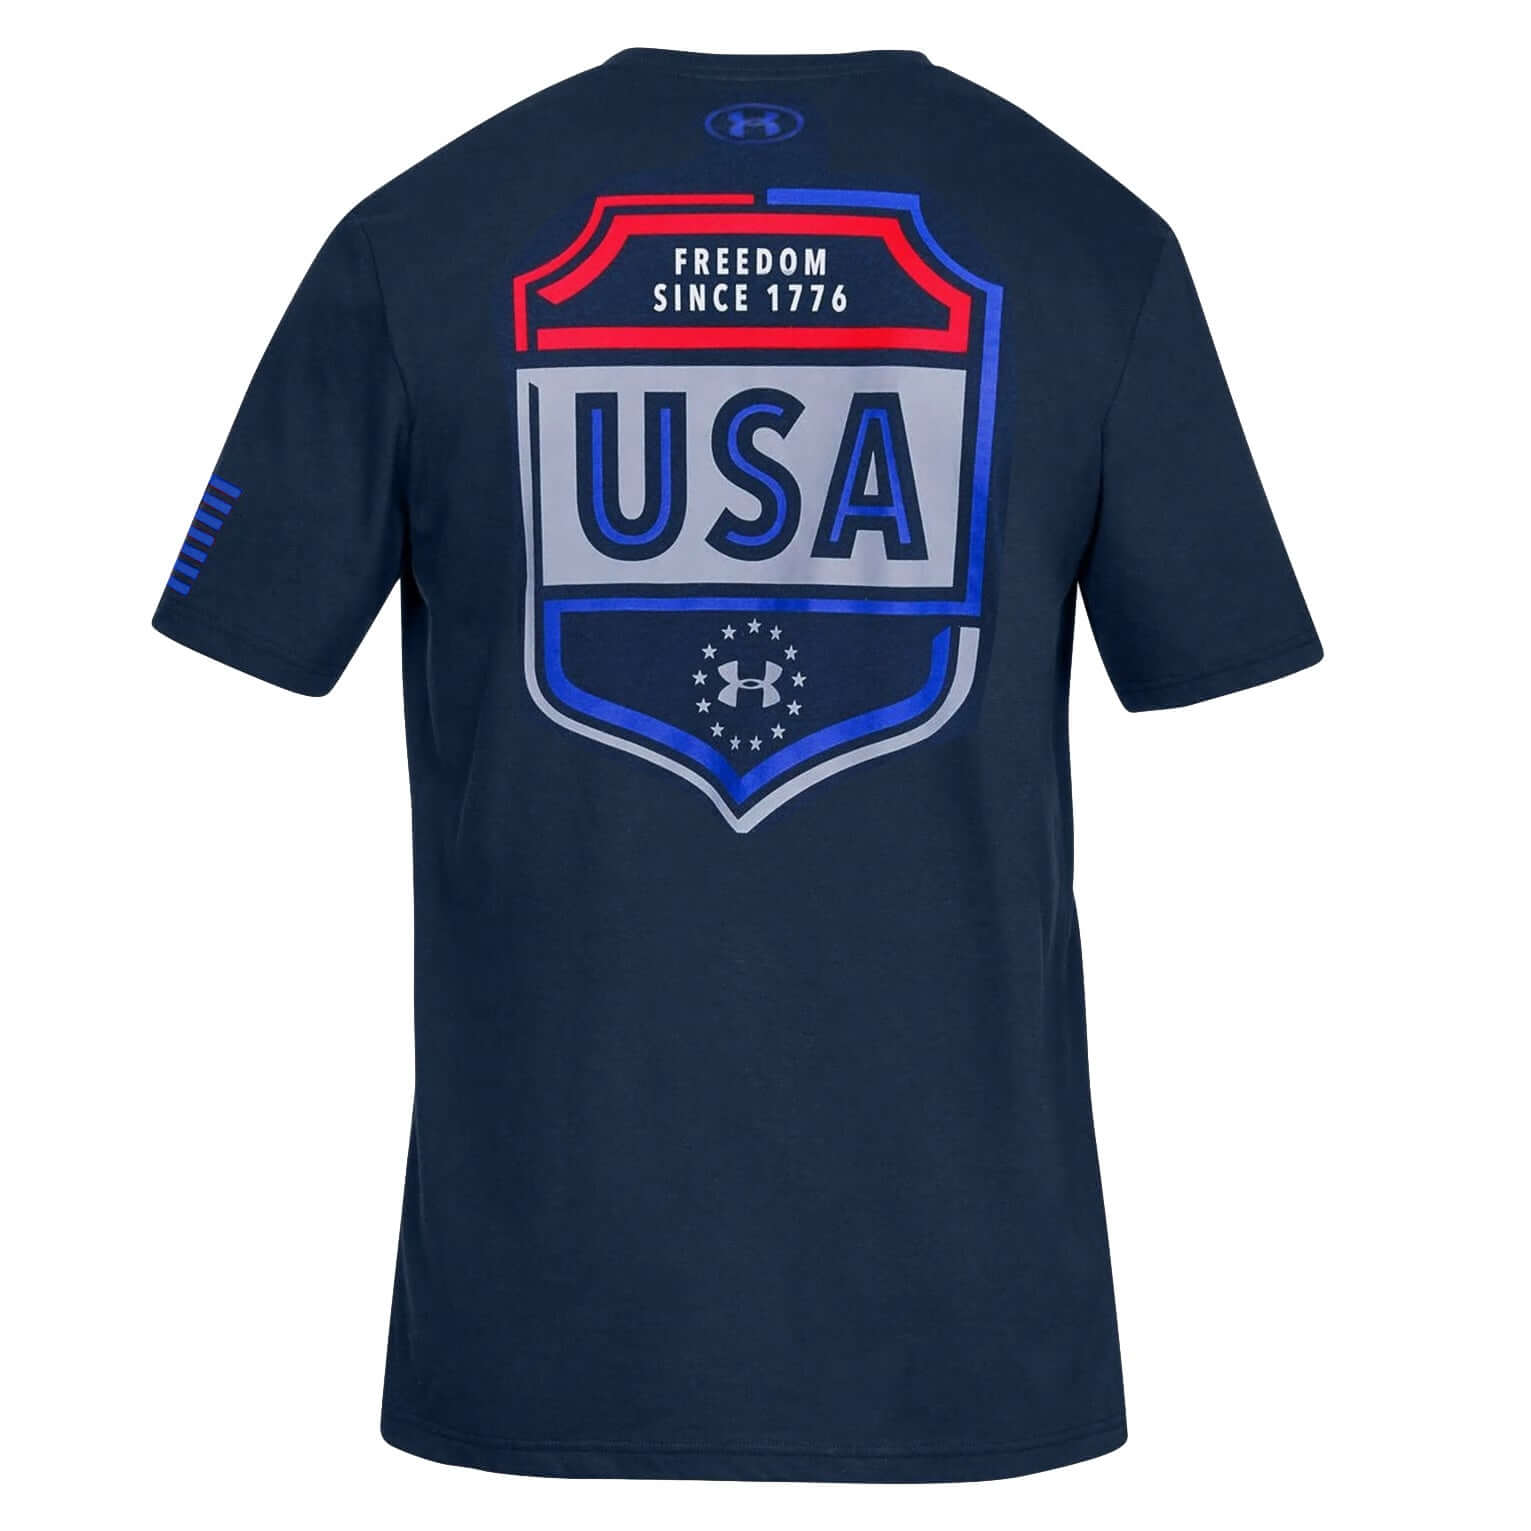 Under Armour USA Emblem T-Shirt Navy